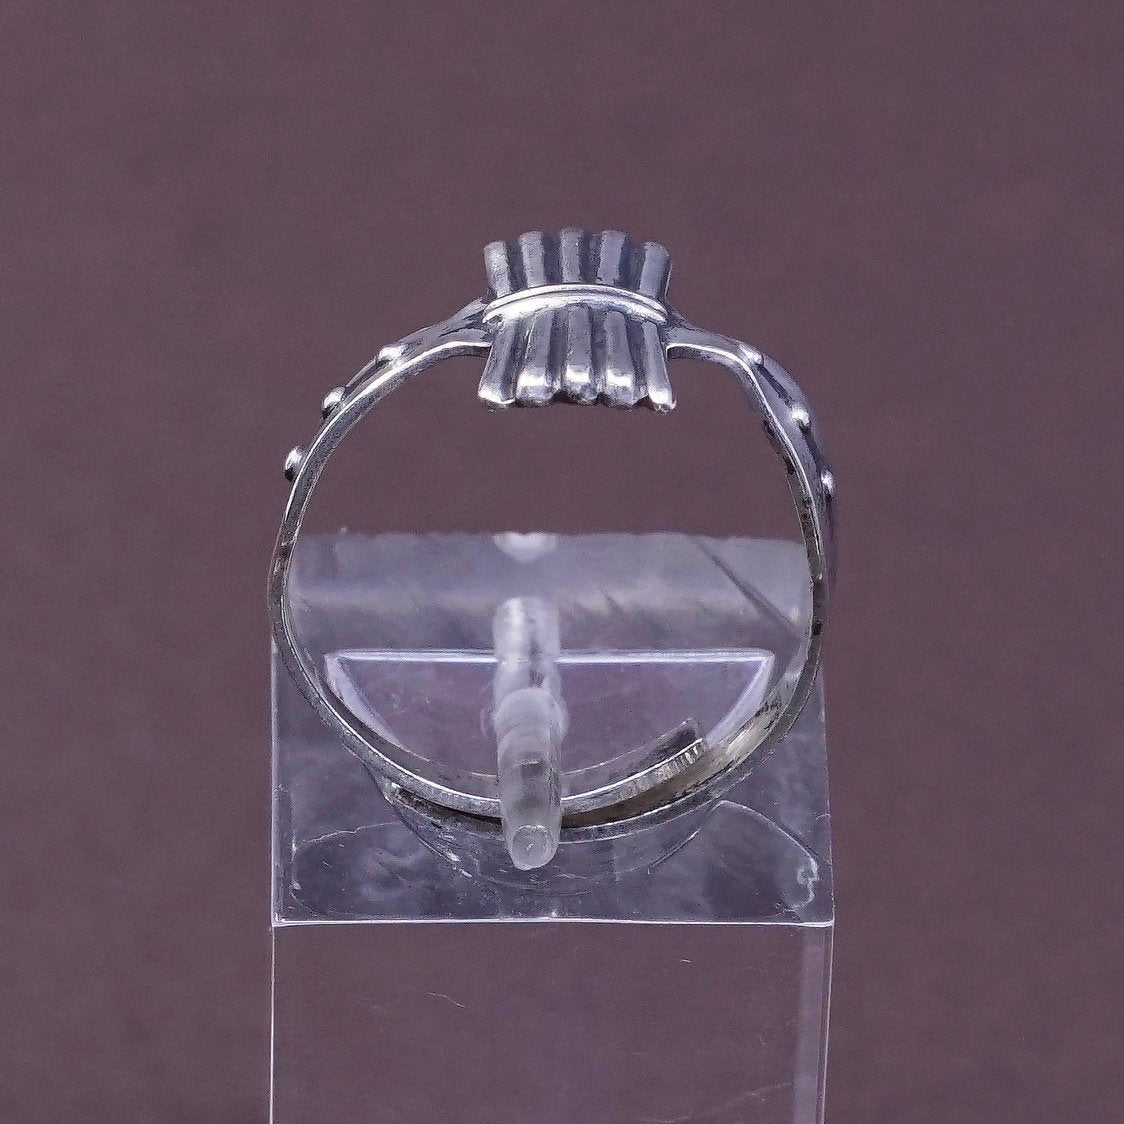 Size adjustable, vtg Sterling silver handmade ring, 925 band